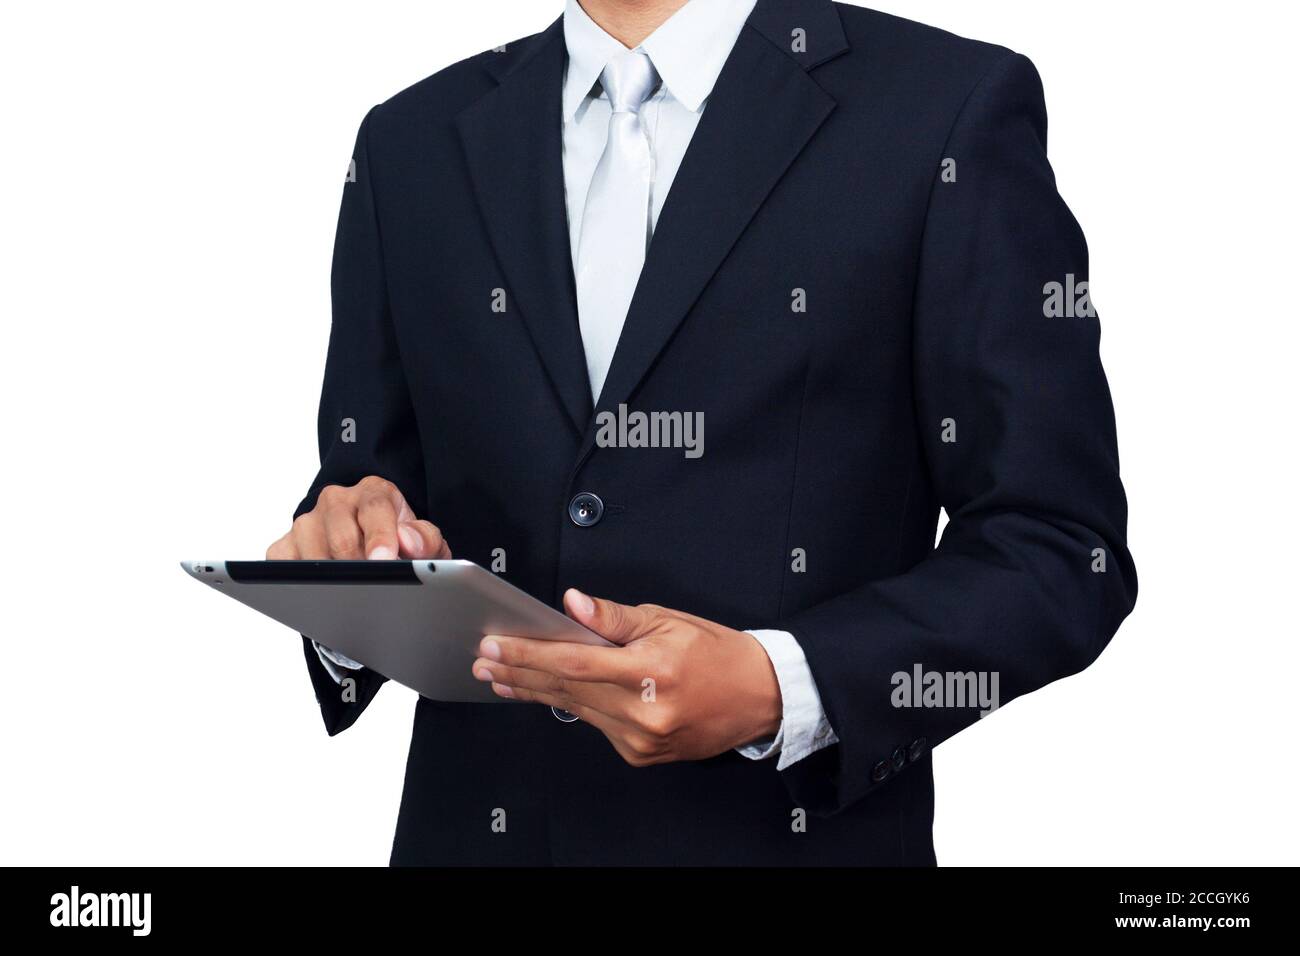 Homme d'affaires asiatique en costume habillé porter à l'aide d'un ordinateur tablette isolé sur fond blanc avec un chemin d'écrêtage. Modèle asiatique masculin dans ses années 30 Banque D'Images